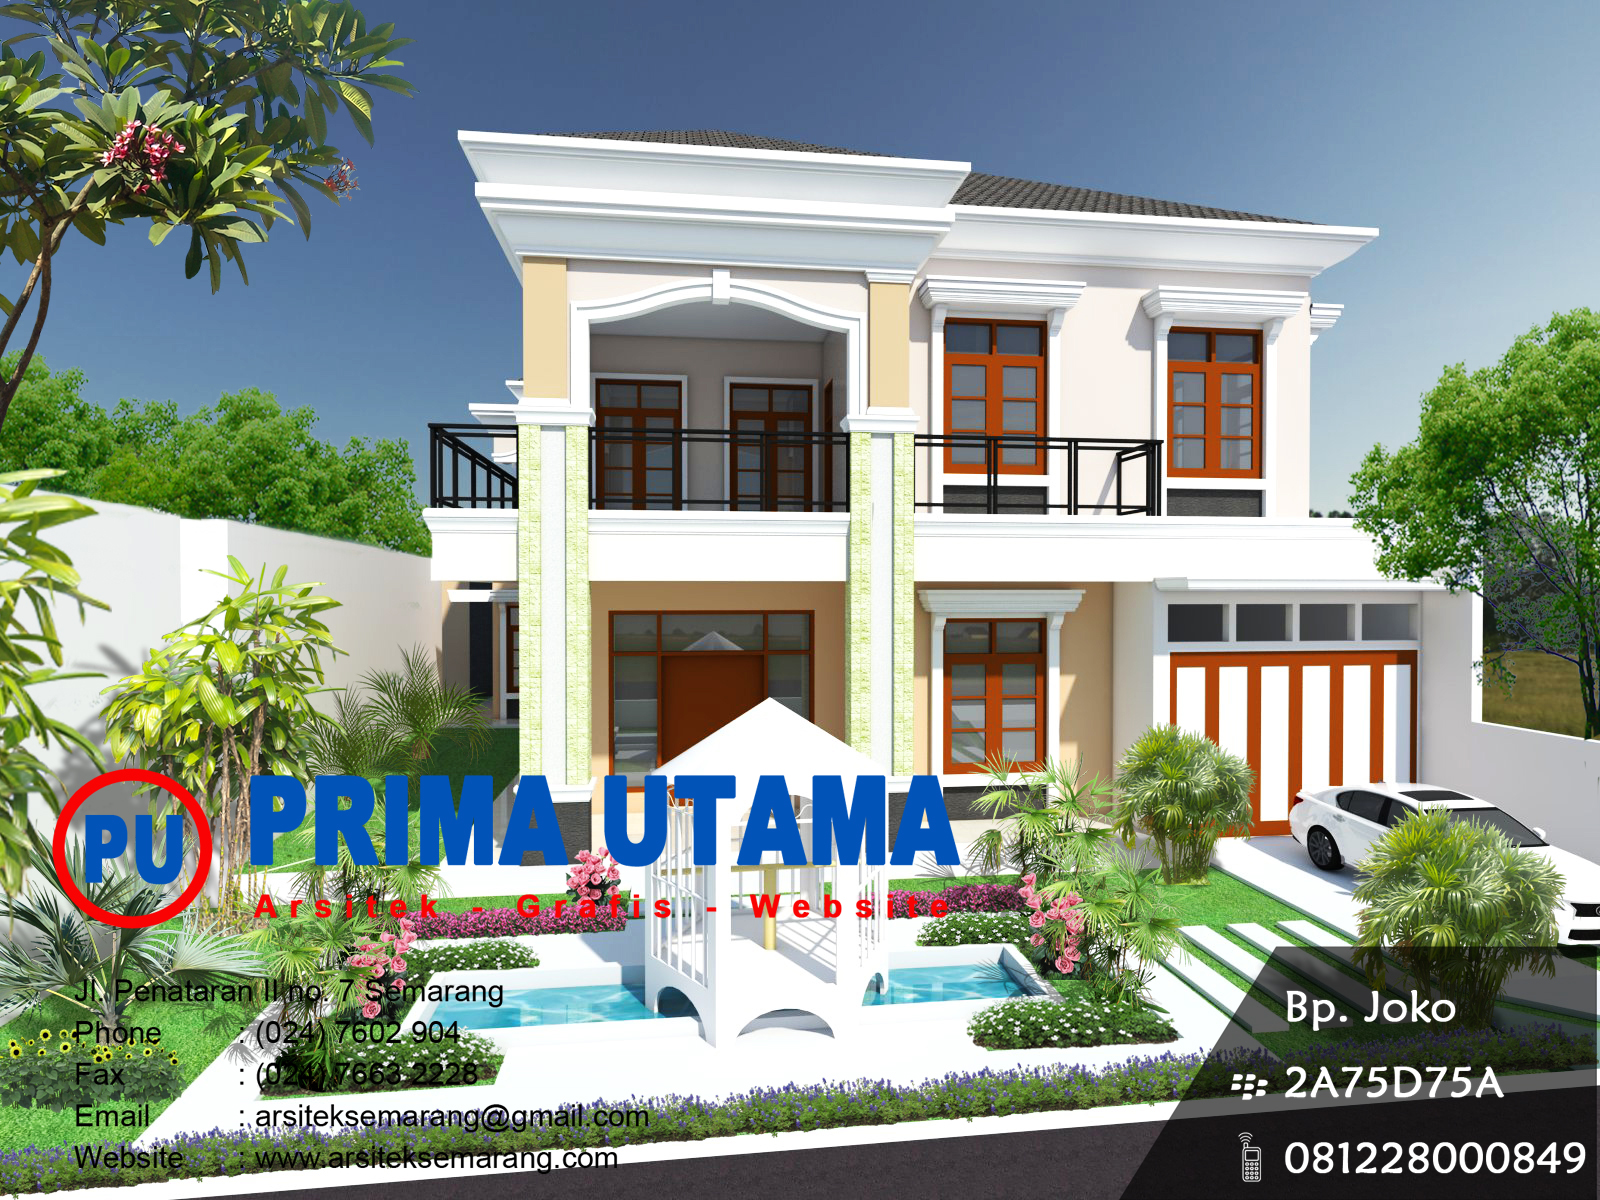 Harga Khusus Untuk Koleksi Desain Rumah Kami CV PRIMA UTAMA